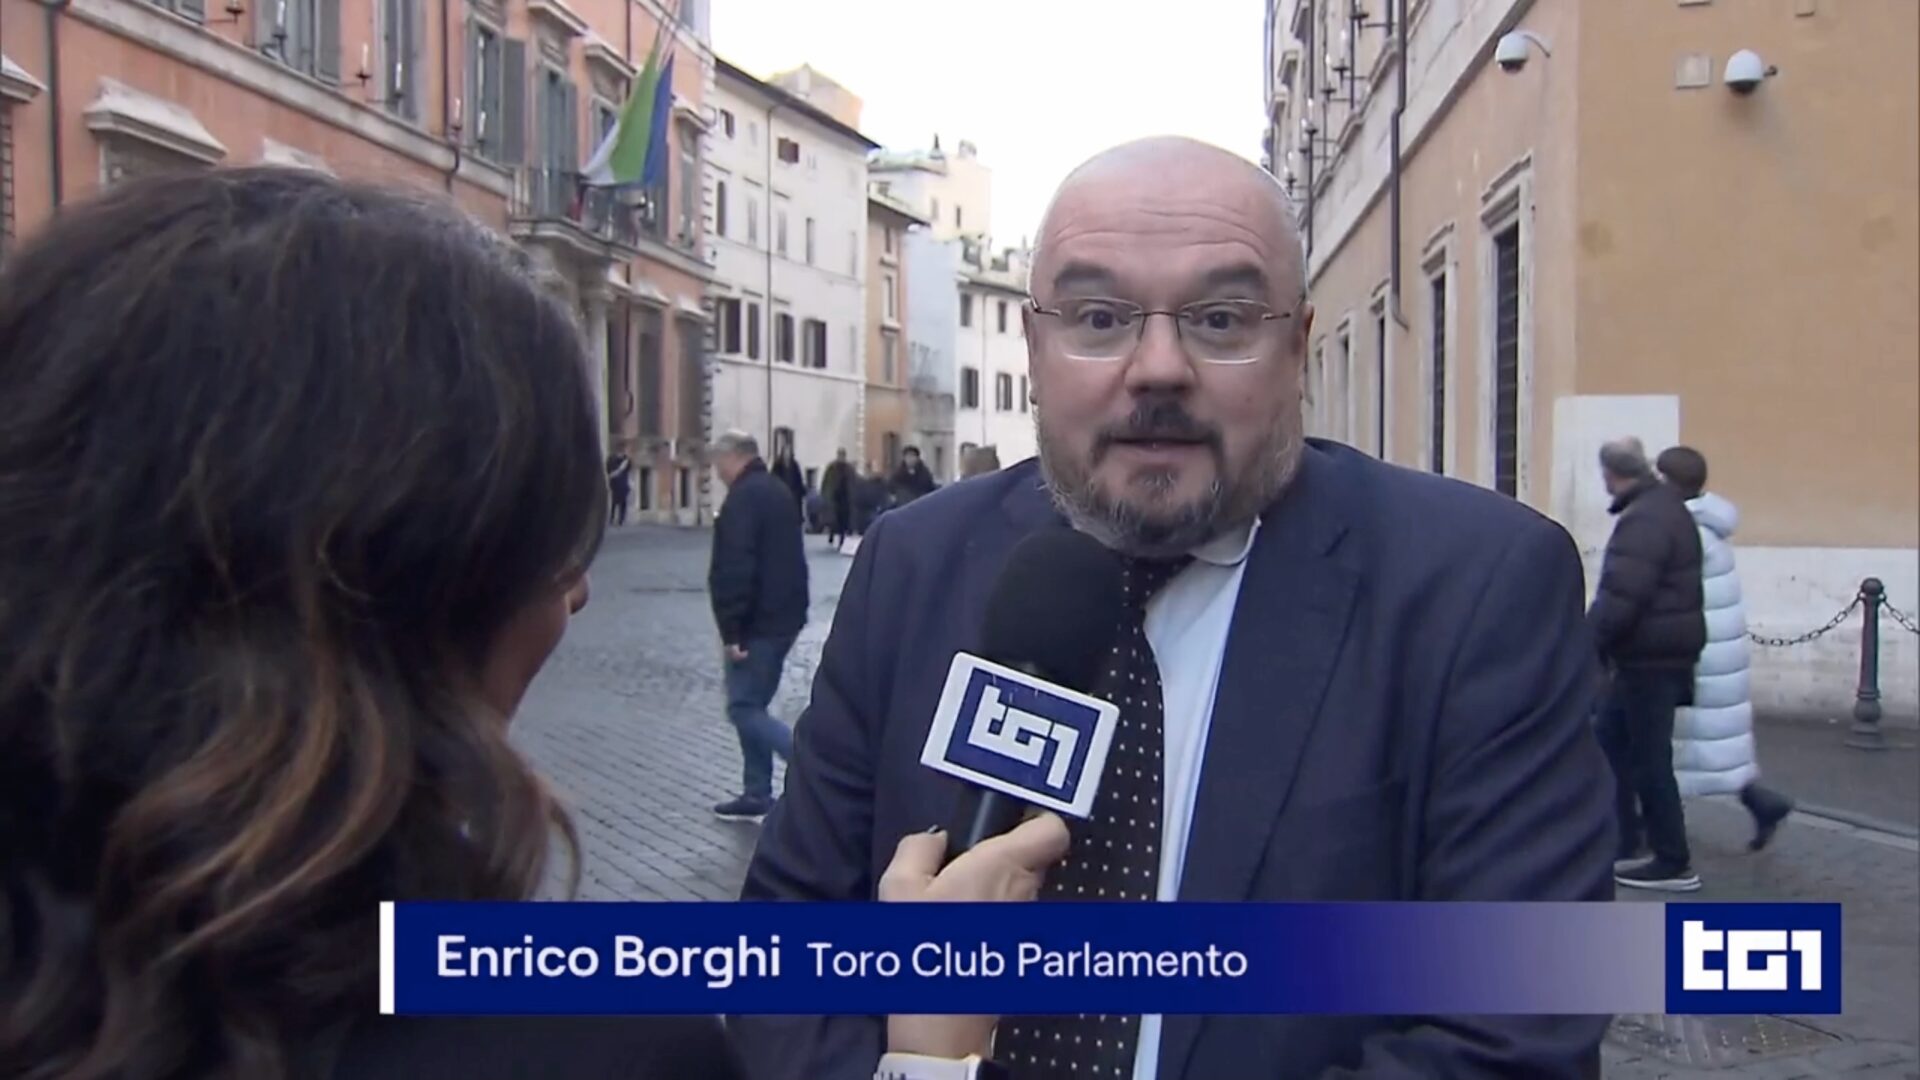 VIDEO| Il senatore Borghi: "La Juve ruba da cinquant'anni, potremmo istituire commissione d'inchiesta"